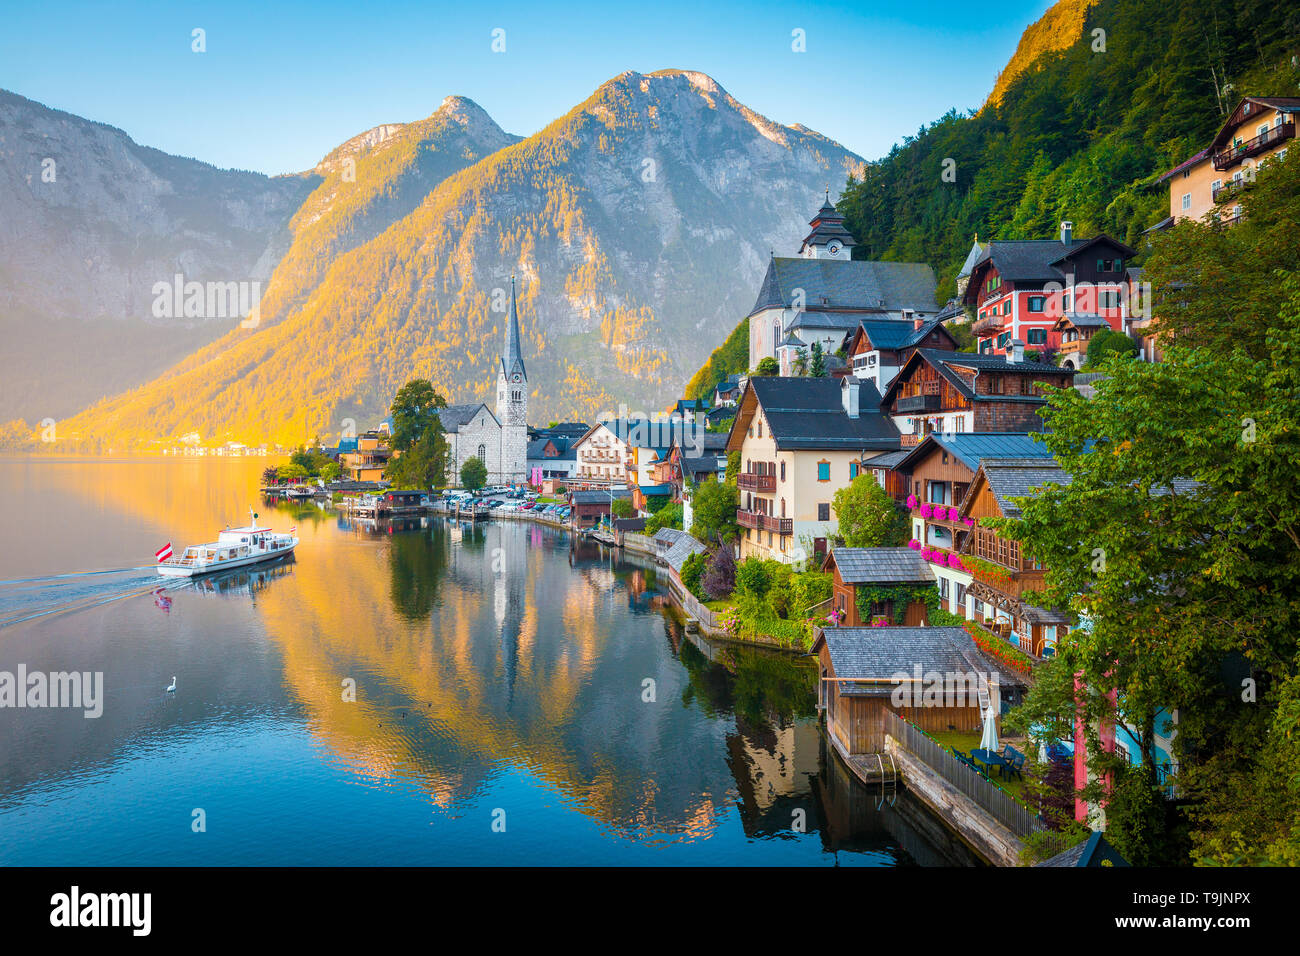 Vue de carte postale classique de la célèbre ville au bord du lac de Hallstatt dans les Alpes avec des passagers à bord d'un navire traditionnel au début de lumière du matin au lever du soleil, Autriche Banque D'Images